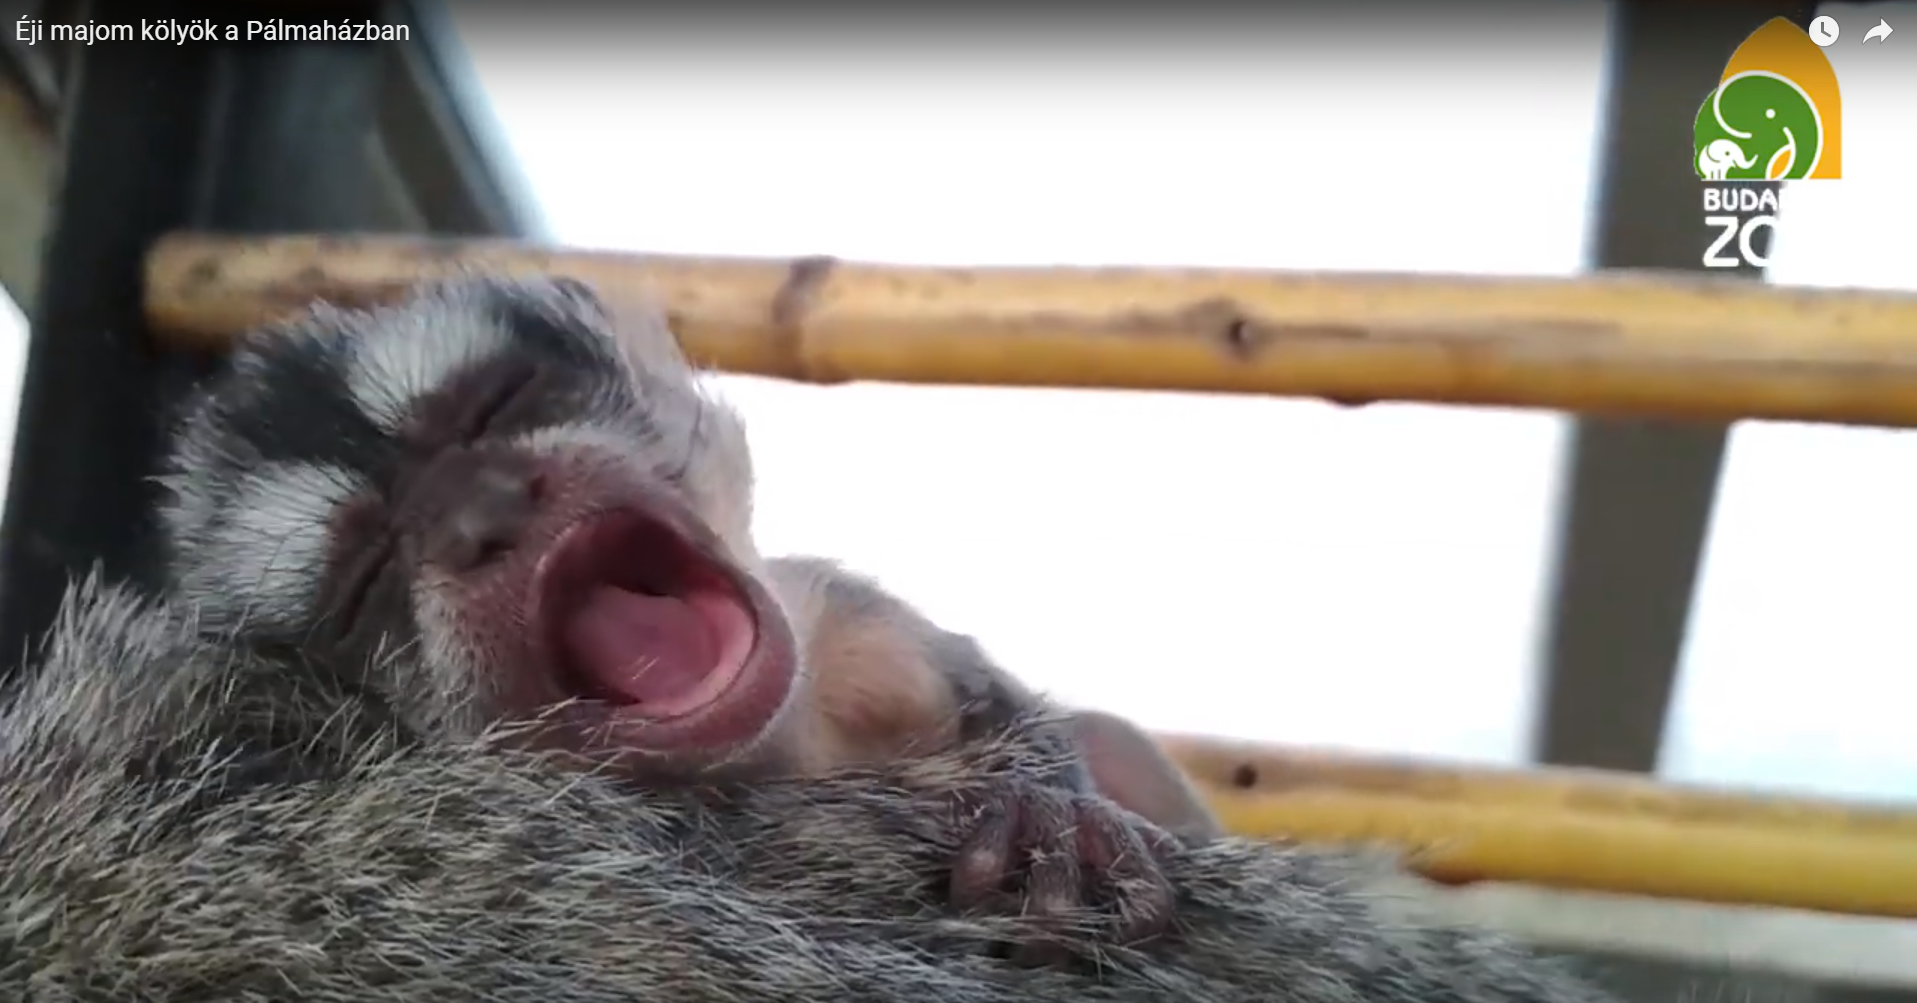 Napközben látványos ásítozó apró majomkülönlegesség született a budapesti állatkertben